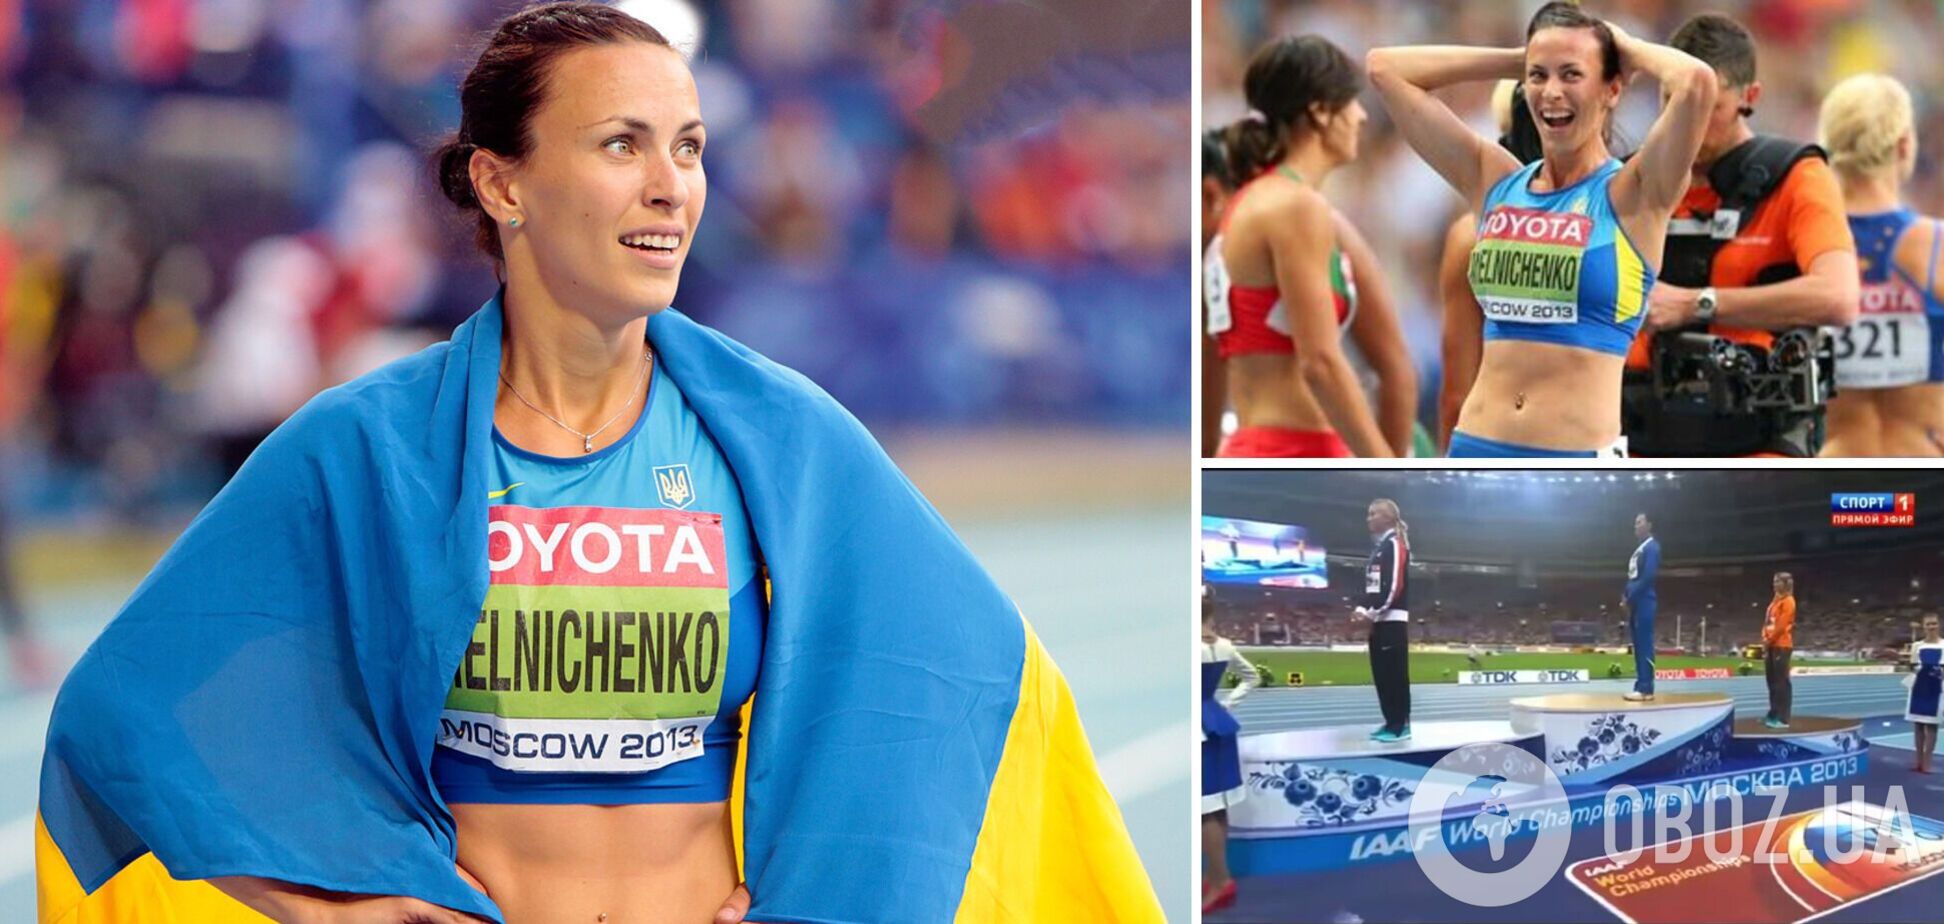 Наша легкоатлетка заставила московские 'Лужники' слушать гимн Украины после победы на чемпионате мира в России. Как это было